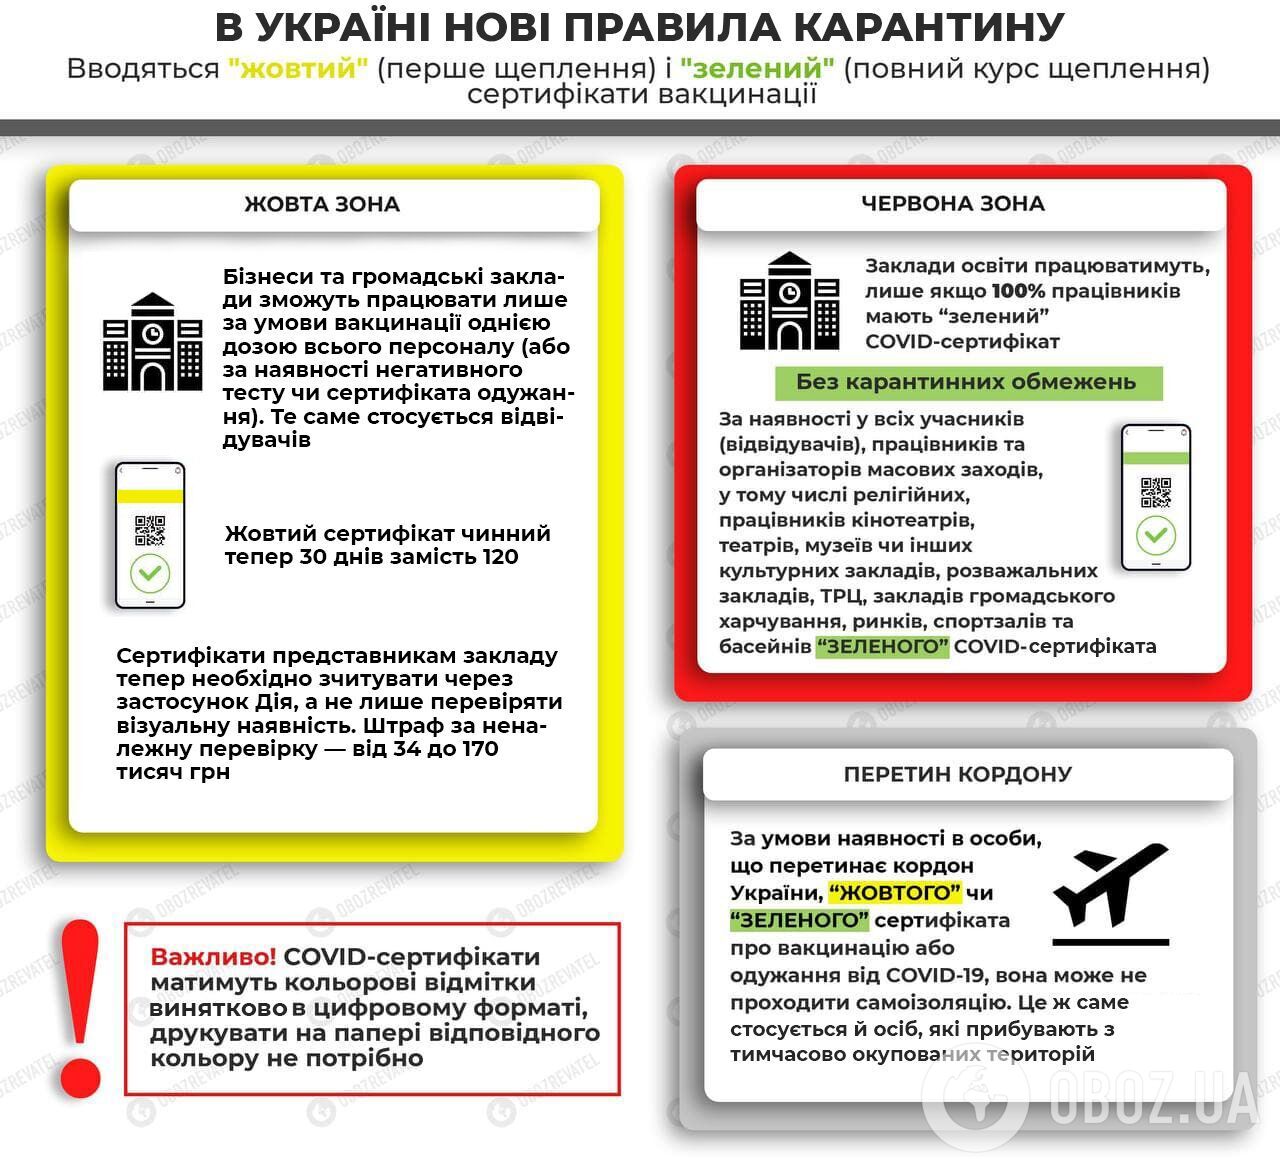 Обмеження у зонах карантину в Україні.